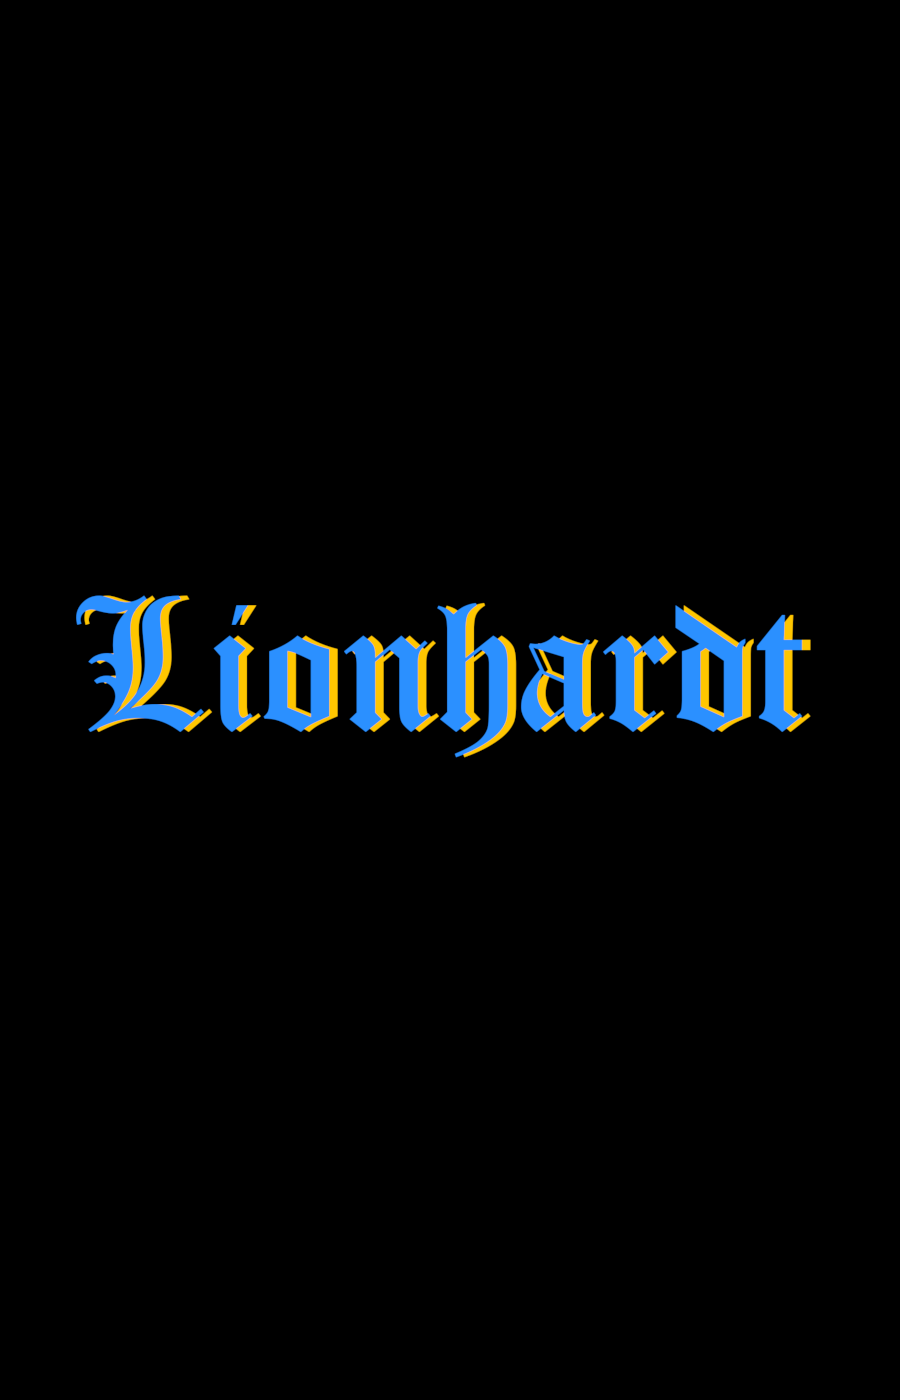 Lionhardt